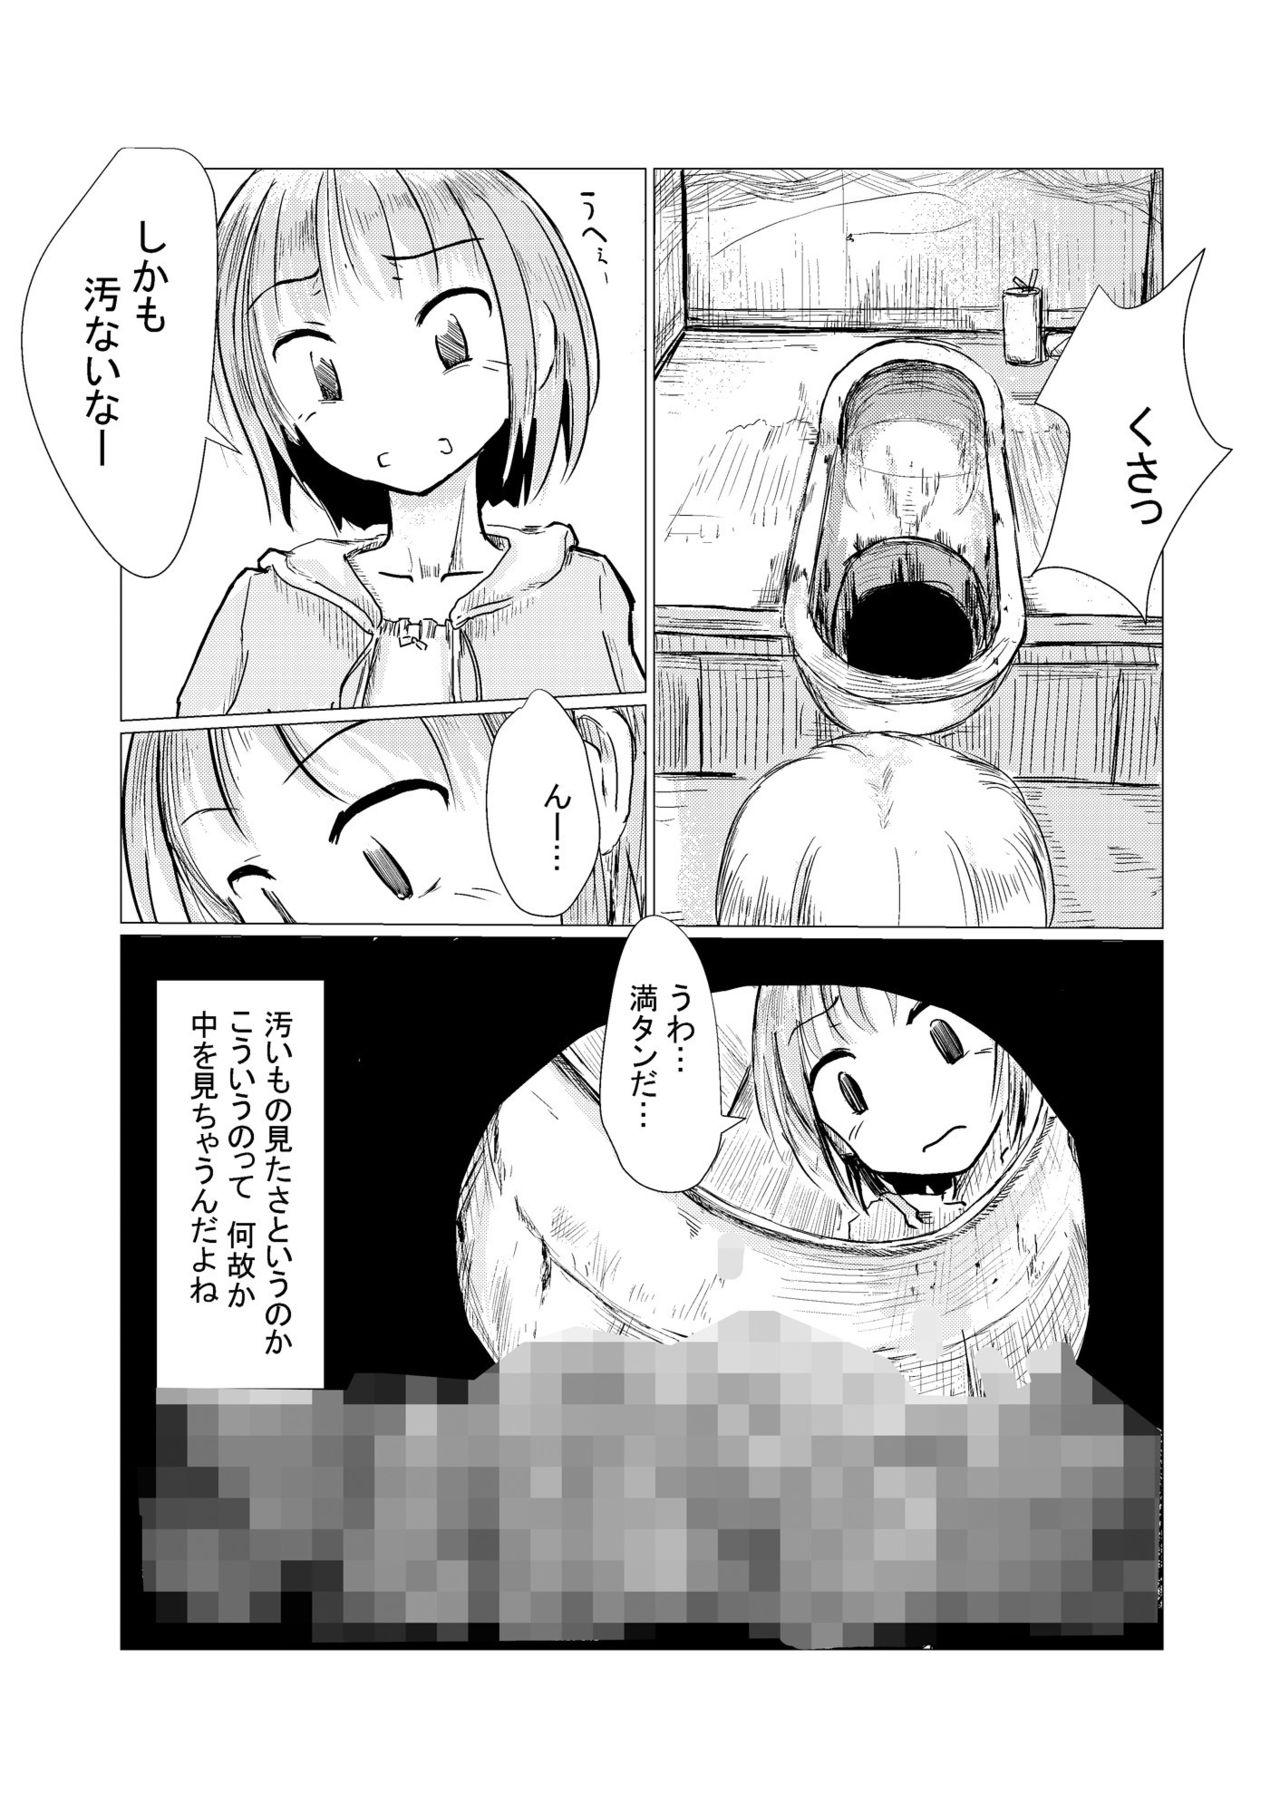 Fantasy Sanpo~Shizen to Shoujo to Benjo - Original Fun - Page 3